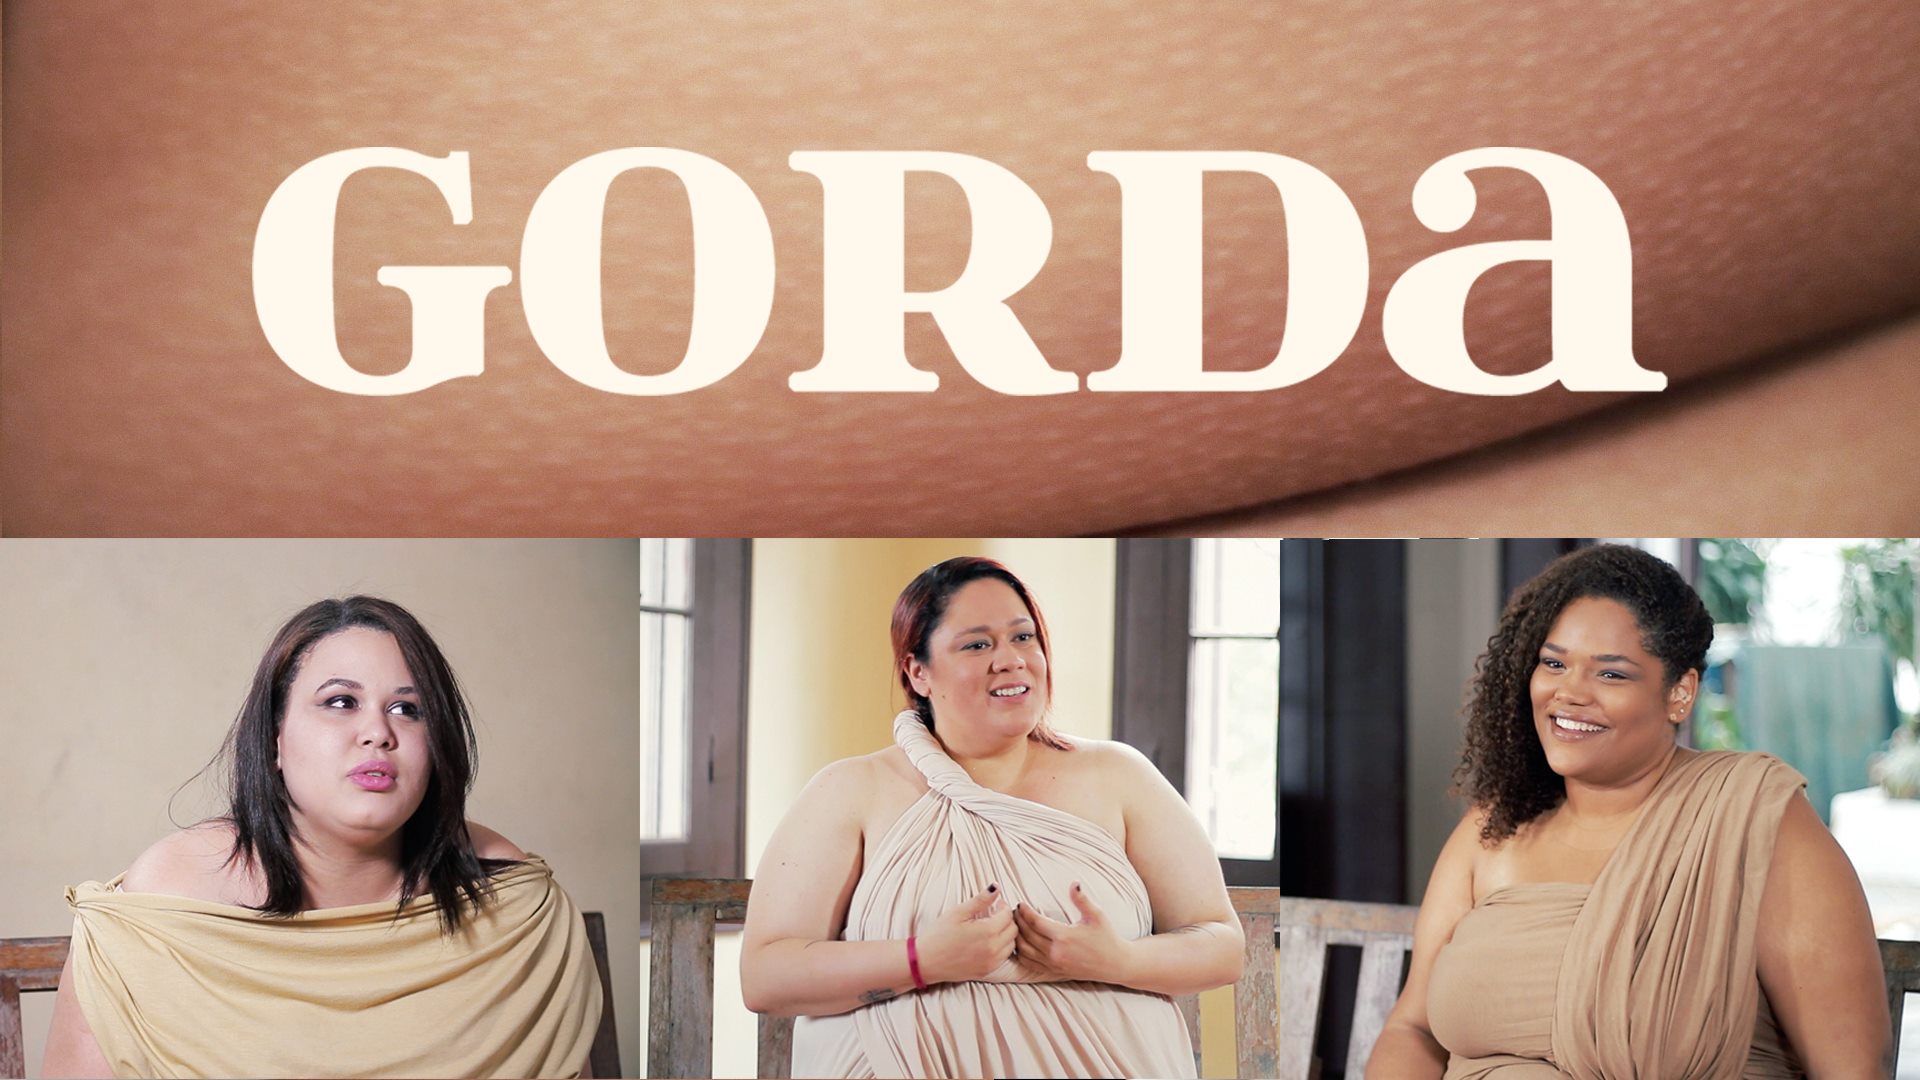 Imagem dividida, acima: o nome do documentário, Gorda; abaixo, as três entrevistadas, Cláudia, Elisa e Dandara.